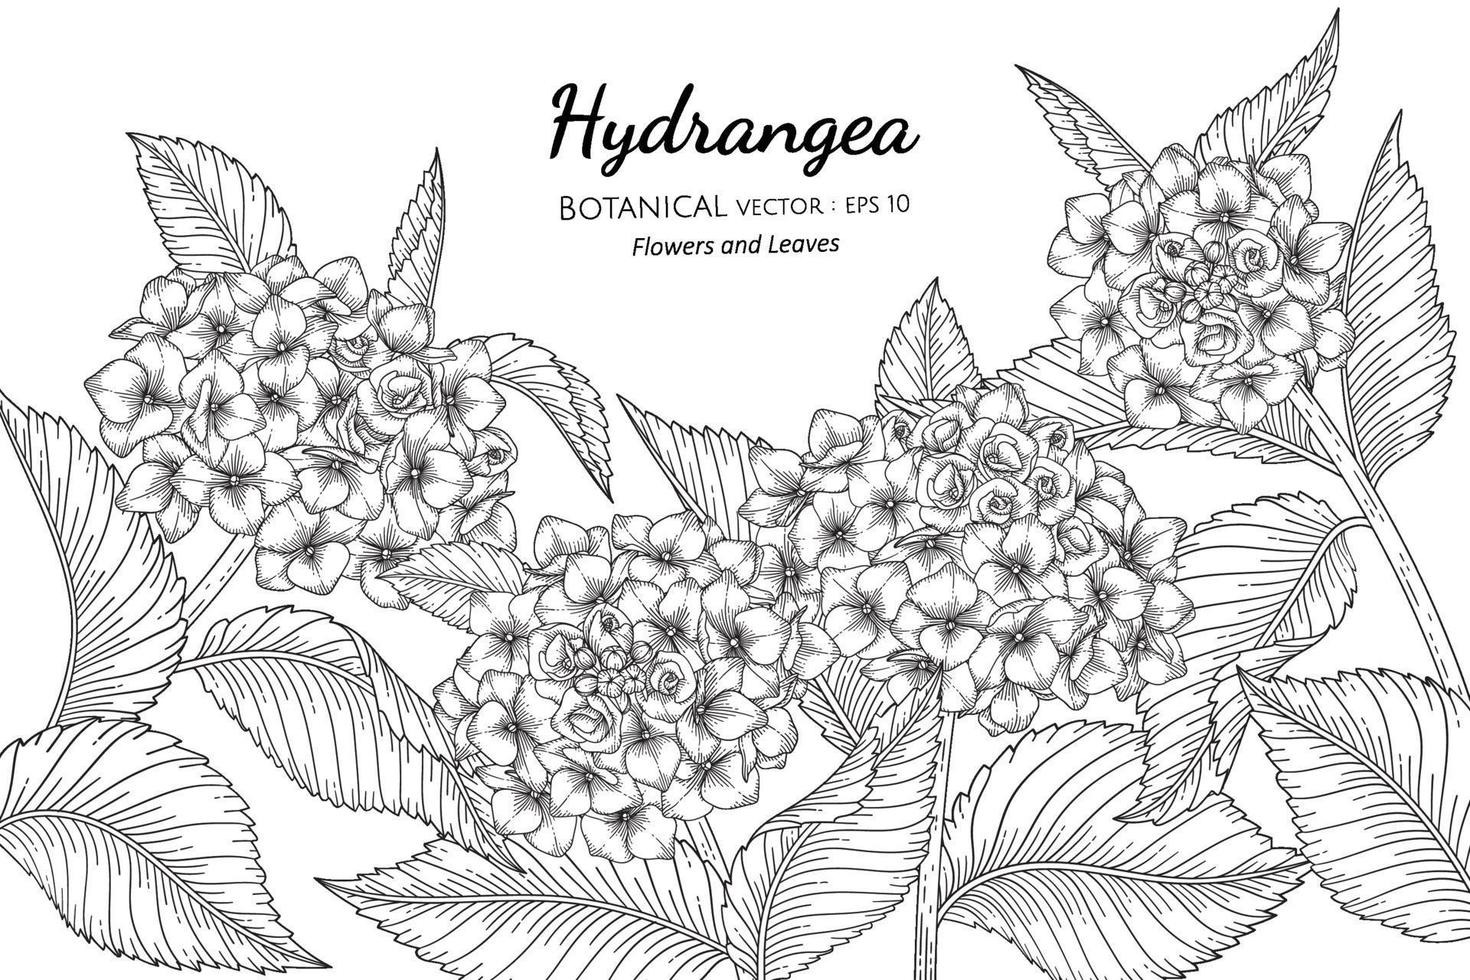 illustrazione botanica disegnata a mano di fiori e foglie di ortensie con disegni al tratto su sfondi bianchi. vettore